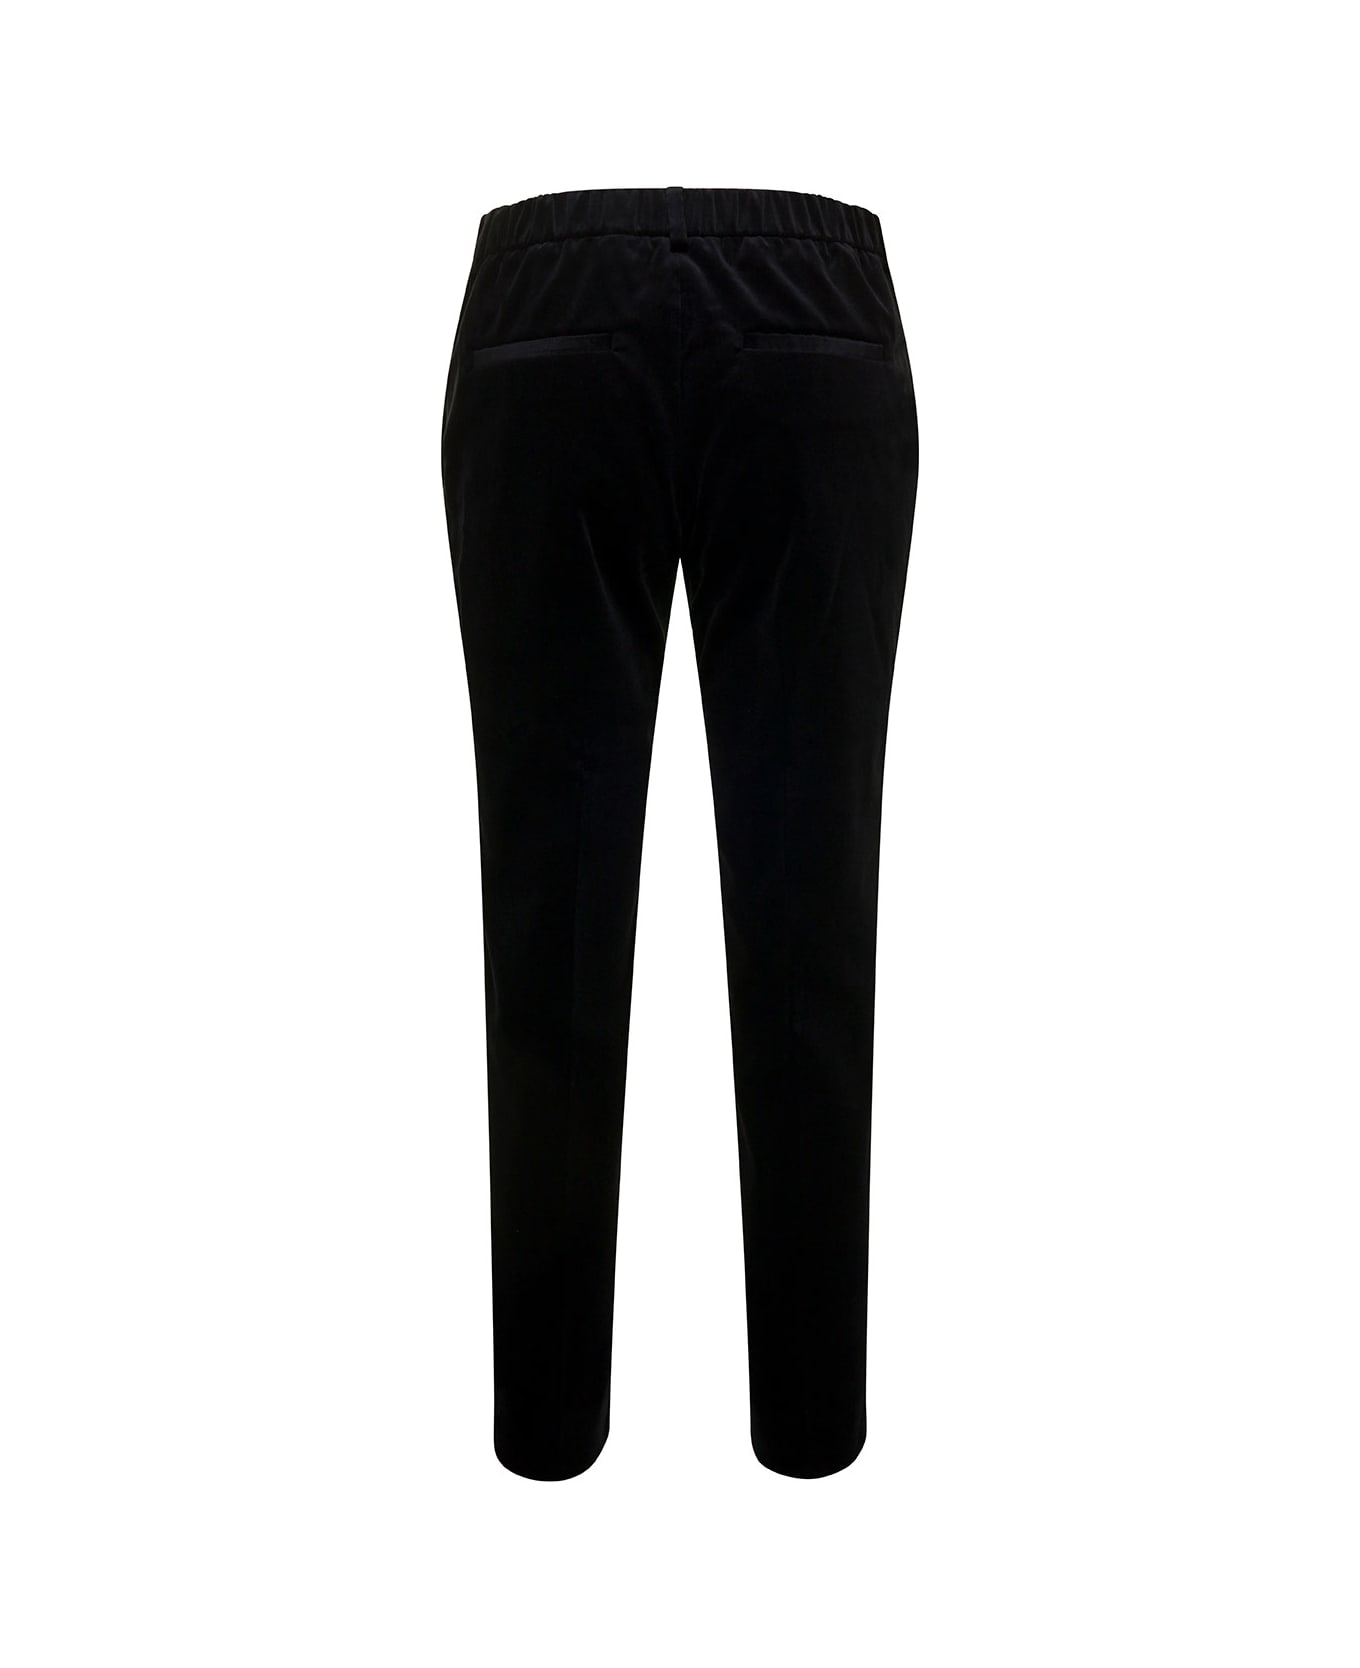 Alberto Biani Black Slim Pants With Side Zip Closure In Velvet Woman - Black